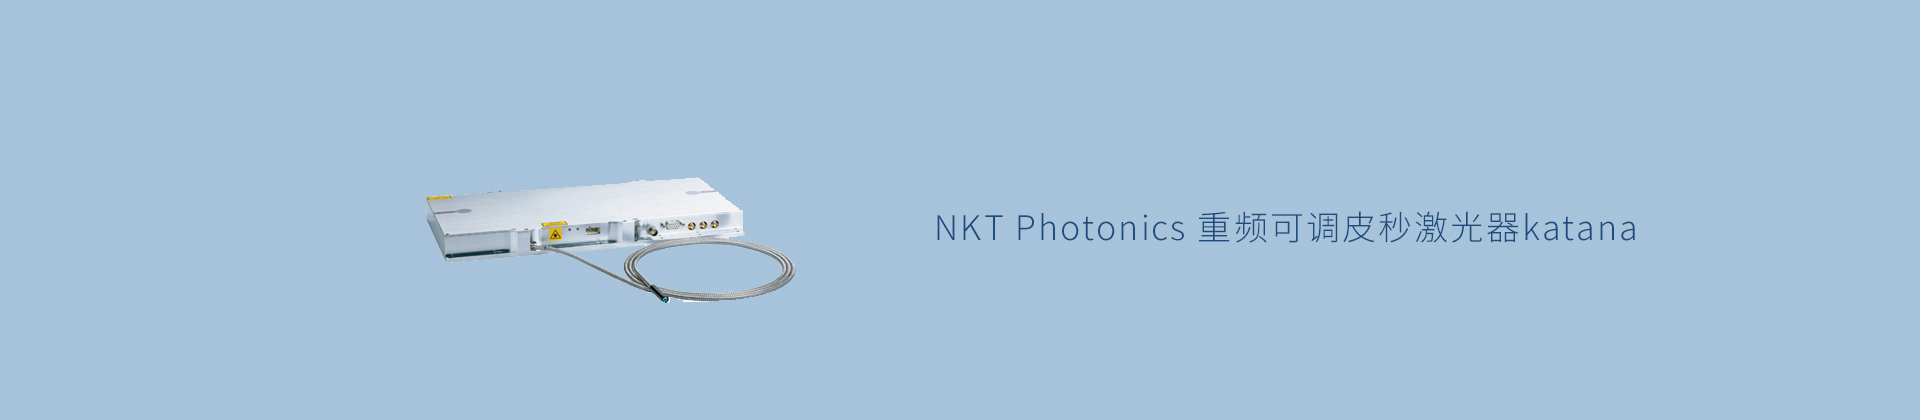 NKT Photonics 重频可调皮秒激光器katana